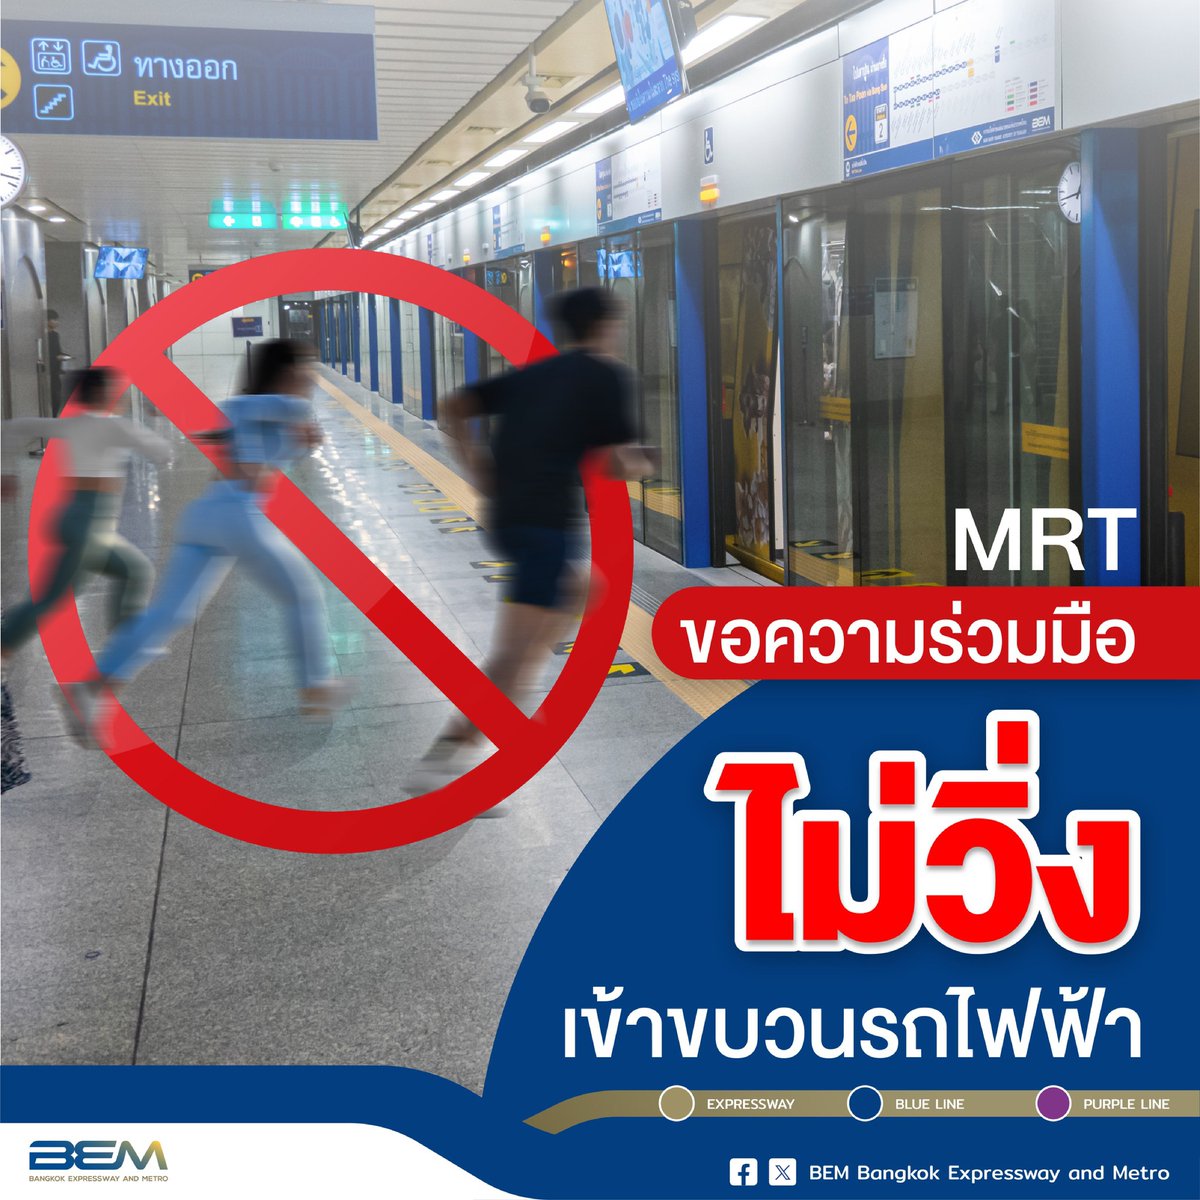 รถไฟฟ้า MRT เปิดให้บริการปกติทุกสถานีครับ
สายสีน้ำเงินเปิดให้บริการ 06:00-24:00 น.
สายสีม่วงเปิดให้บริการ 05:30-24:00 น. 💙✨

เพื่อความปลอดภัยขณะเข้า ออก ขบวนรถไฟฟ้า MRT
.
เมื่อผู้โดยสารได้ยินเสียง ปิ๊บ ปิ๊บ ปิ๊บ🔊 หมายถึงให้หยุดรอขบวนถัดไป 

#ไม่วิ่ง #ไม่เบียด #ไม่แซง #MRT #BEM